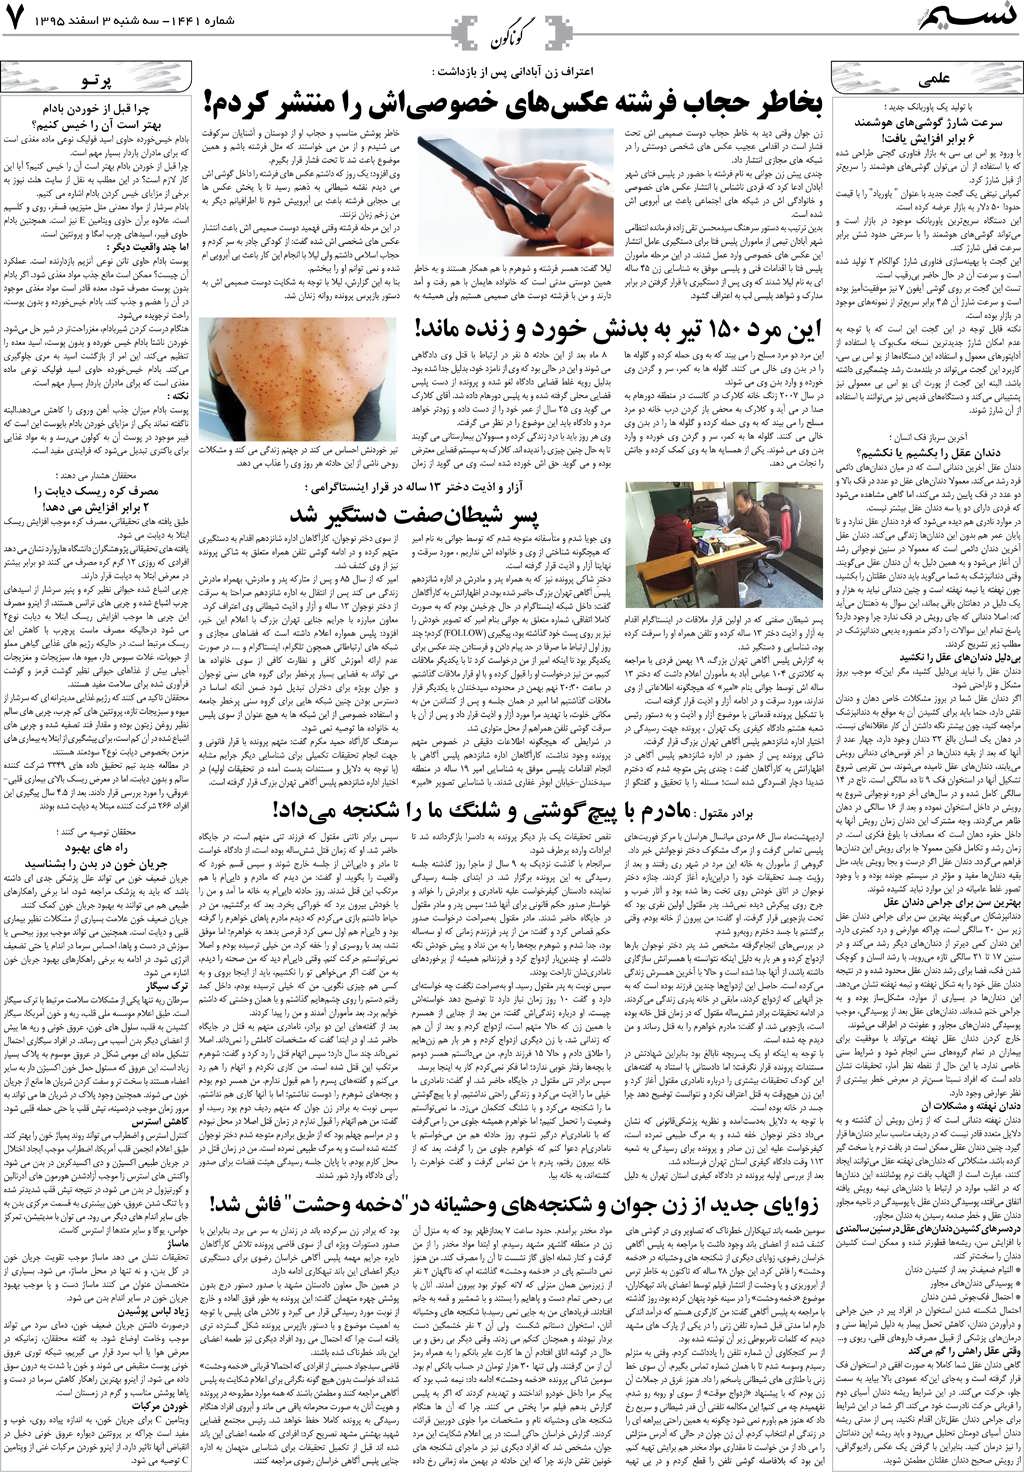 صفحه گوناگون روزنامه نسیم شماره 1441